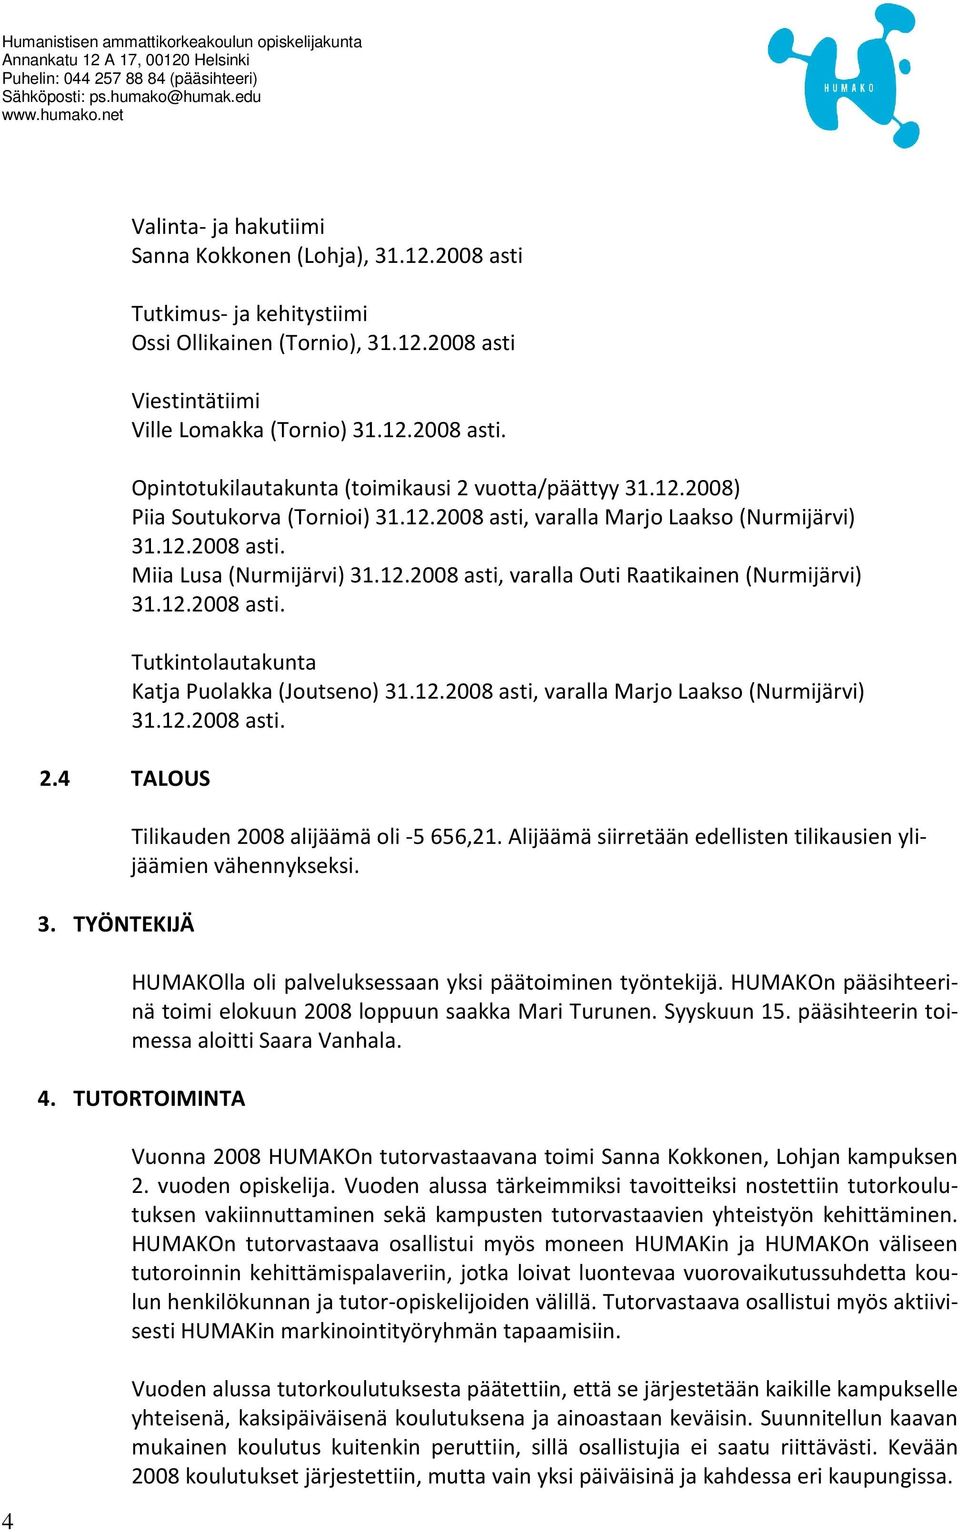 12.2008 asti. Tutkintolautakunta Katja Puolakka (Joutseno) 31.12.2008 asti, varalla Marjo Laakso (Nurmijärvi) 31.12.2008 asti. Tilikauden 2008 alijäämä oli -5 656,21.